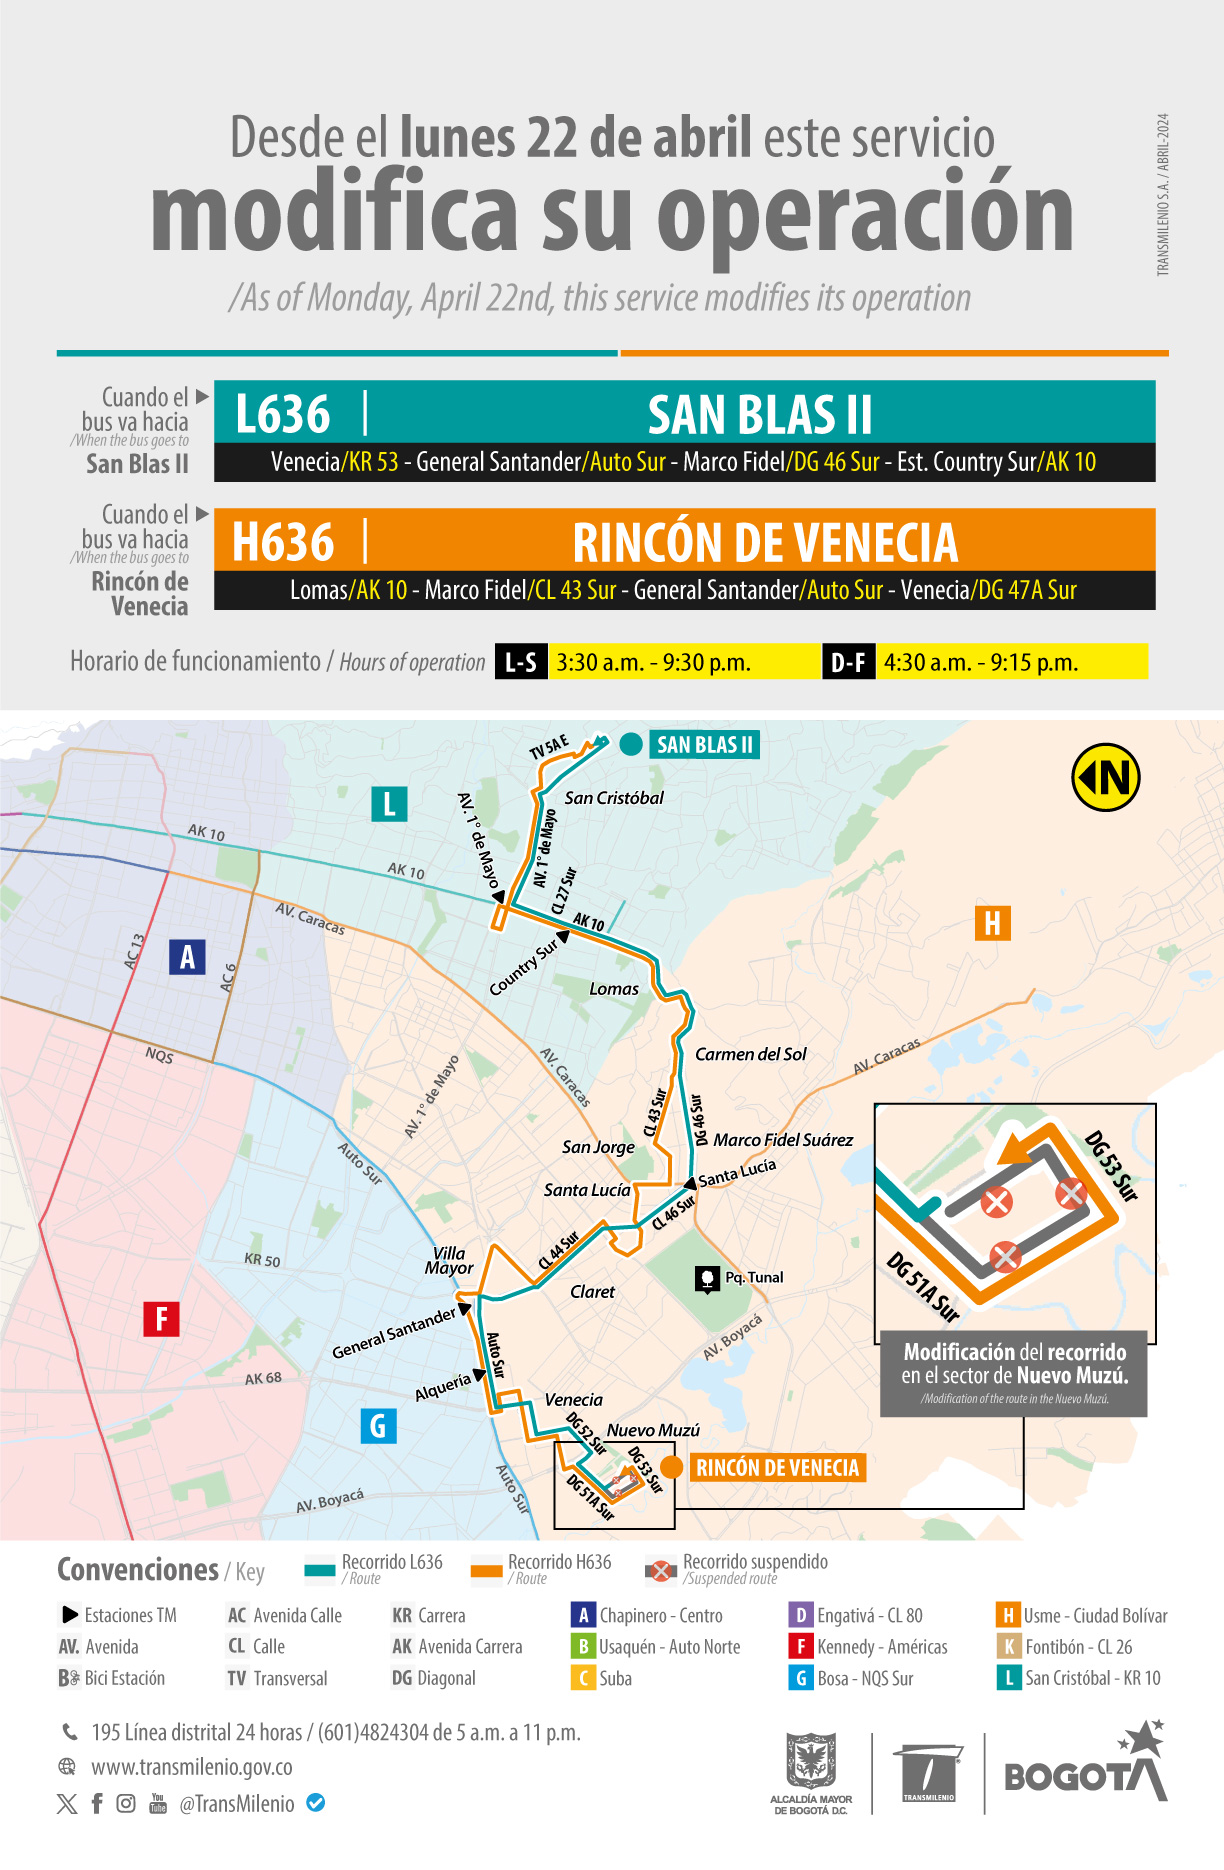 Mapa con el recorrido y cambio operacional de las rutas L636 San Blas II y H636 Rincón de Venecia, modificación su recorrido en el sector de Nuevo Muzú.por la diagonal 51A sur y diagonal 53 Sur